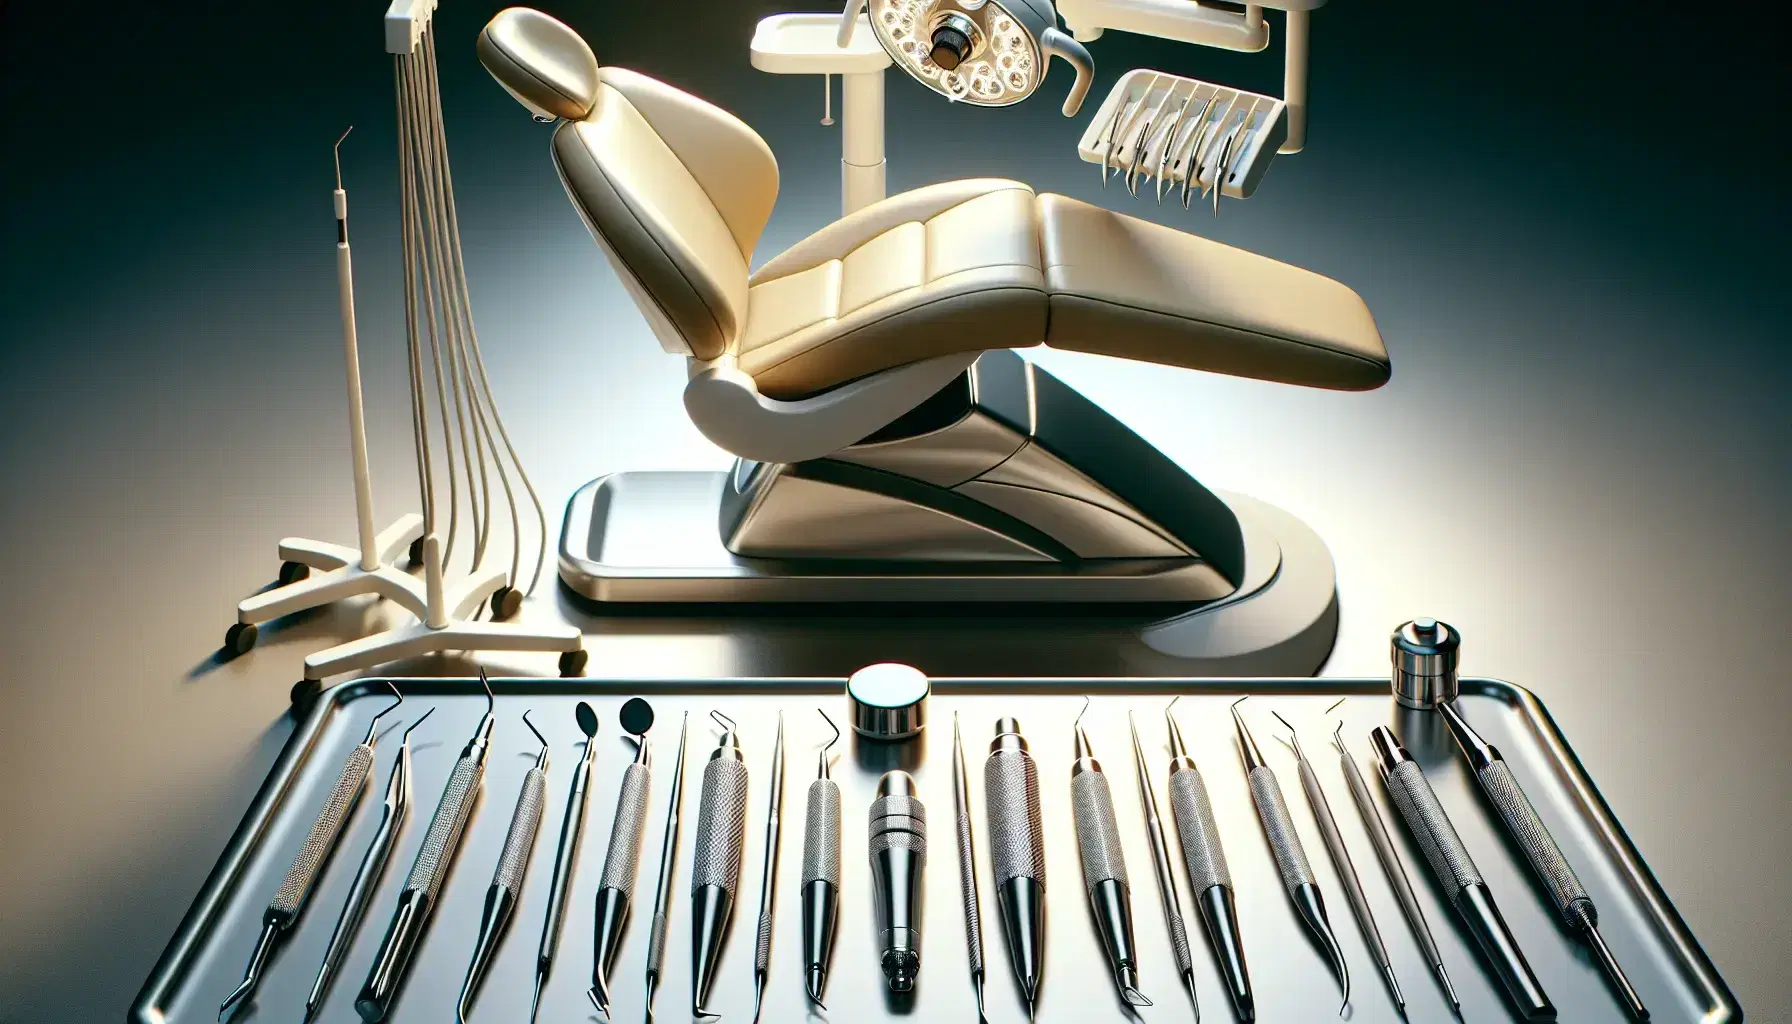 Instrumental odontológico alineado en superficie lisa con silla dental moderna y carro de equipos al fondo, reflejando higiene y profesionalismo.